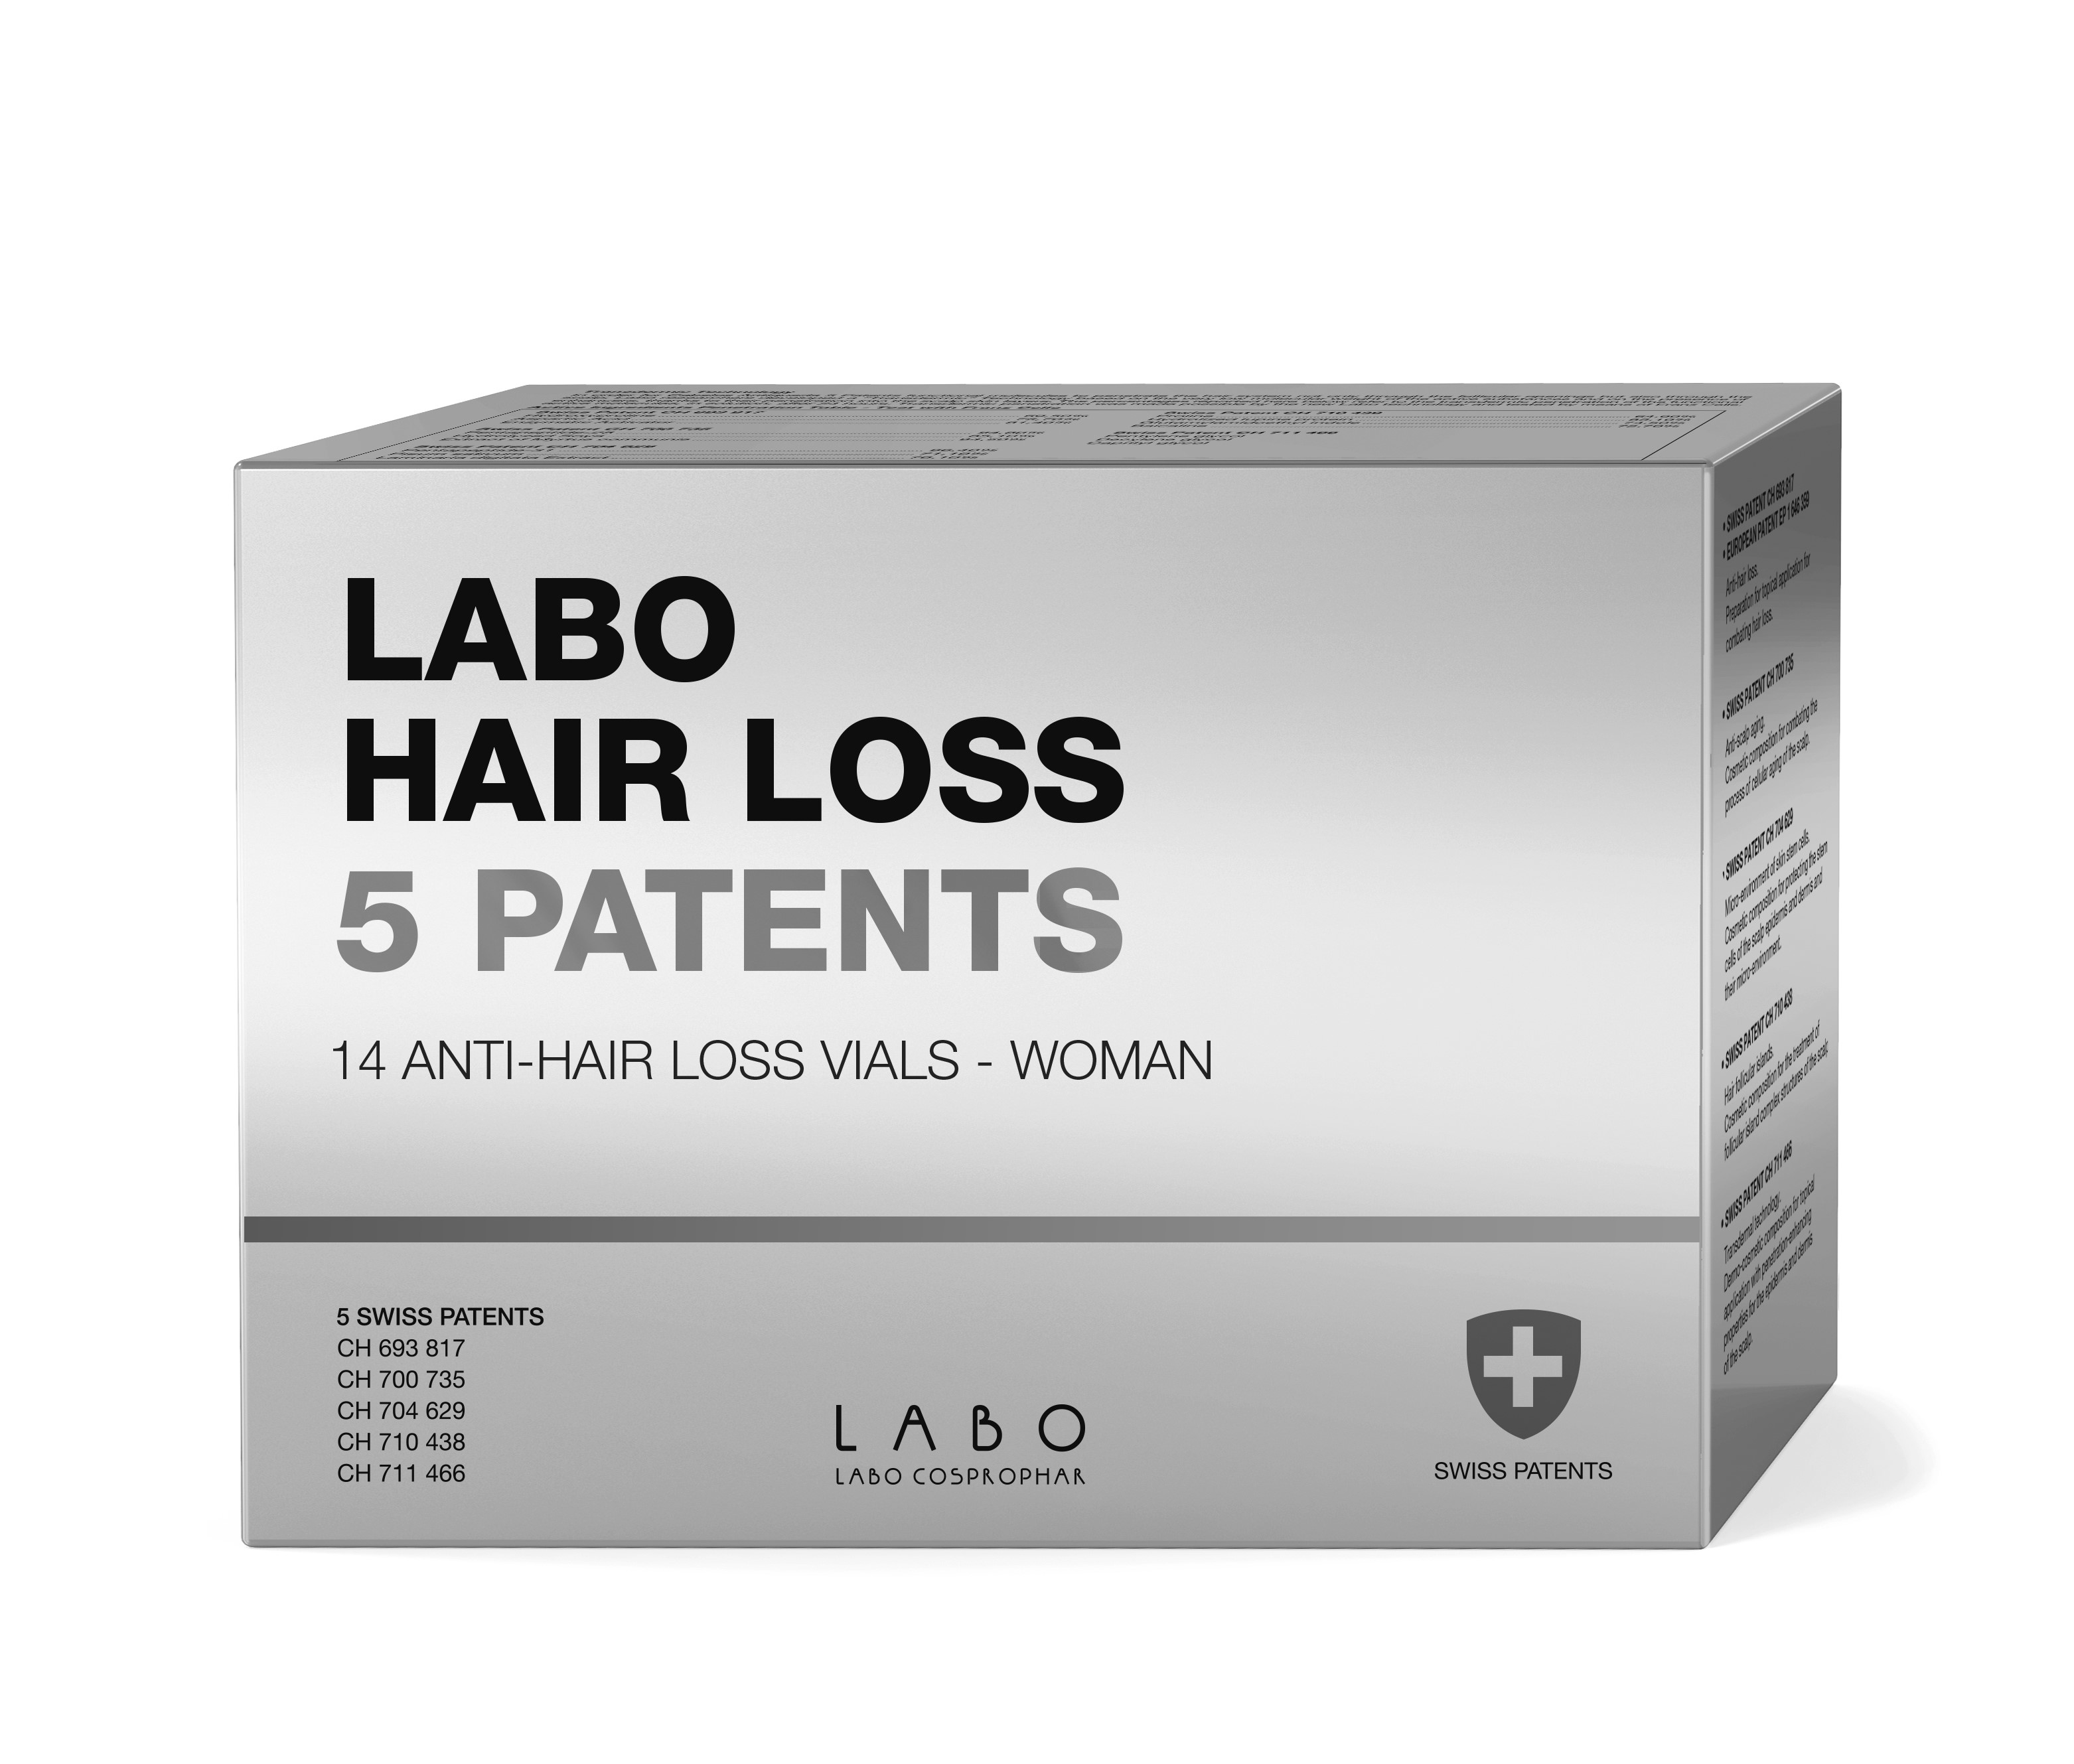 Labo Hair Loss 5 Patents Woman